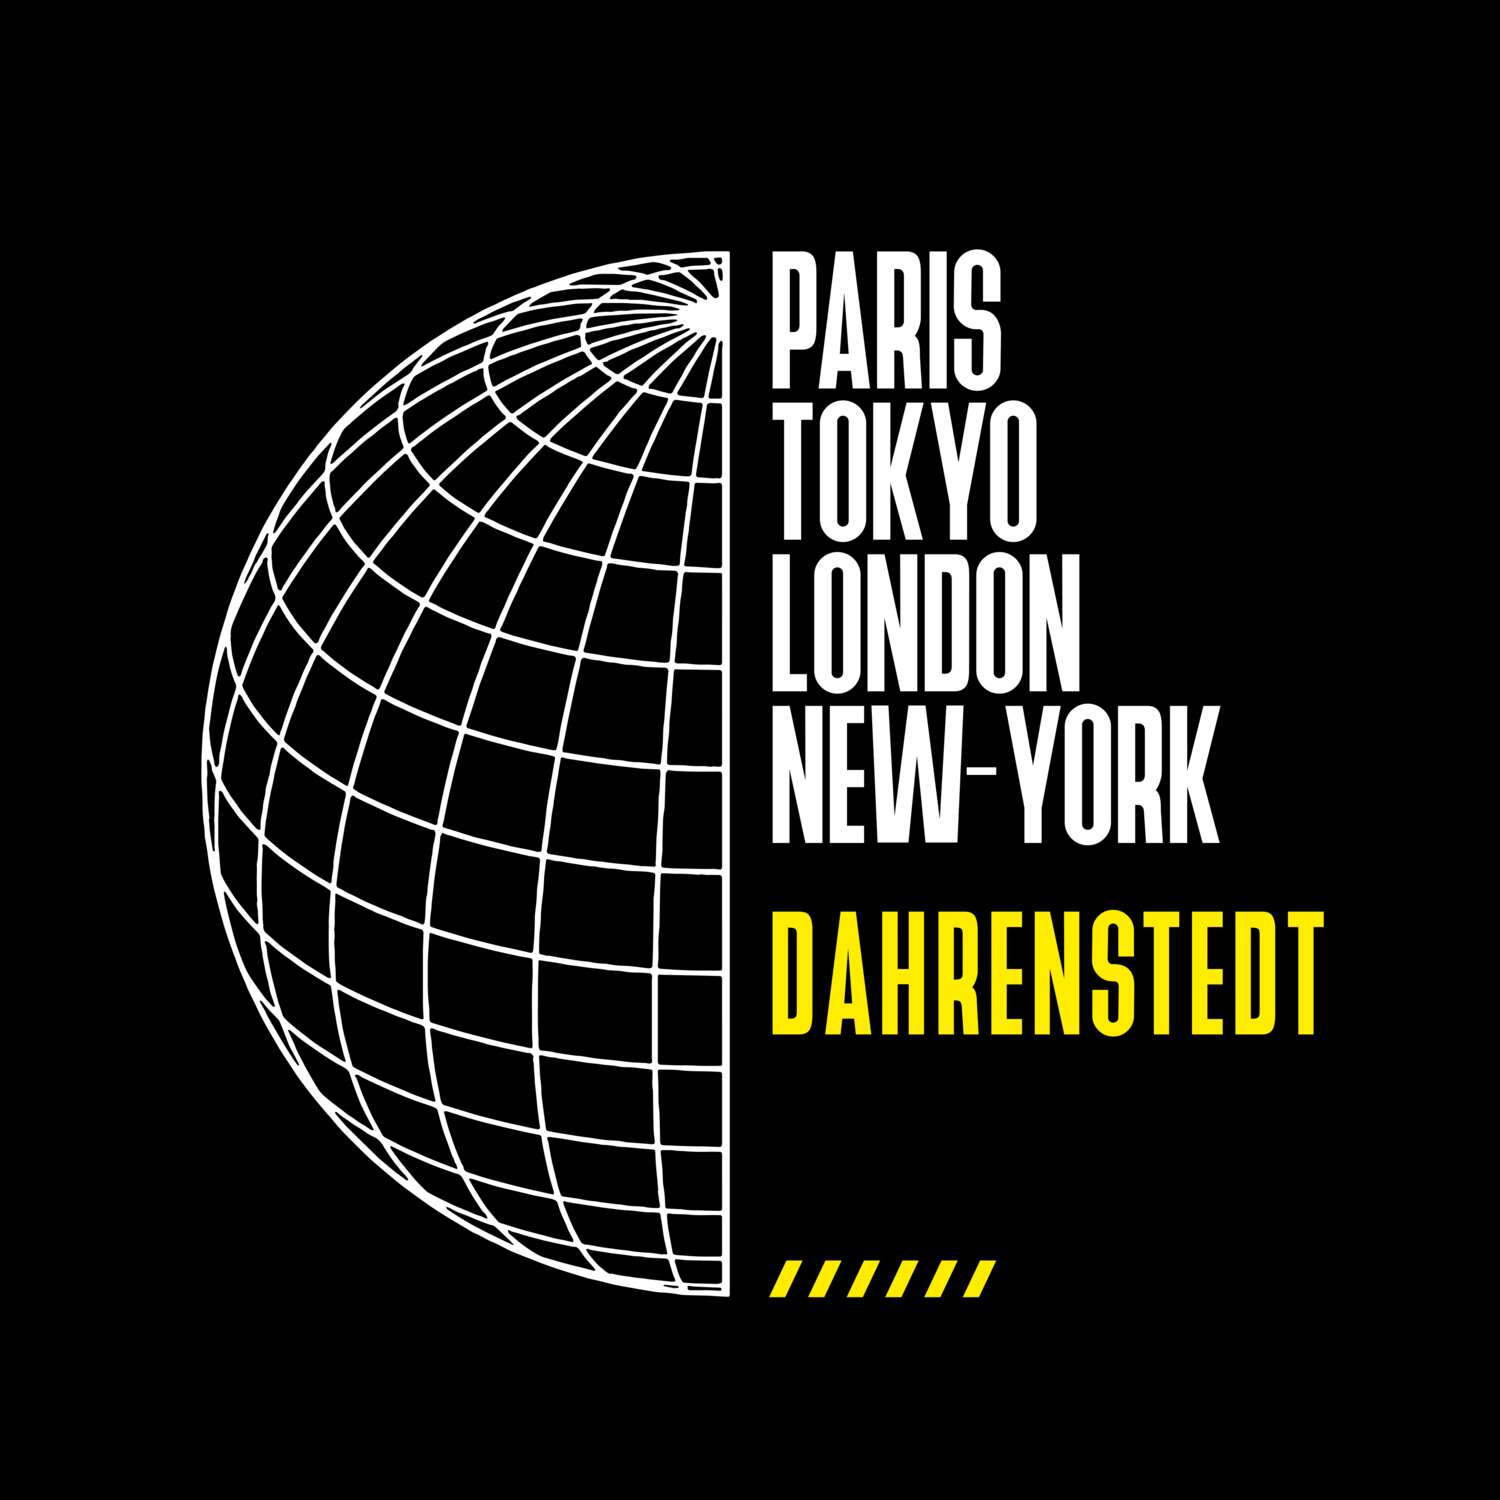 Dahrenstedt T-Shirt »Paris Tokyo London«